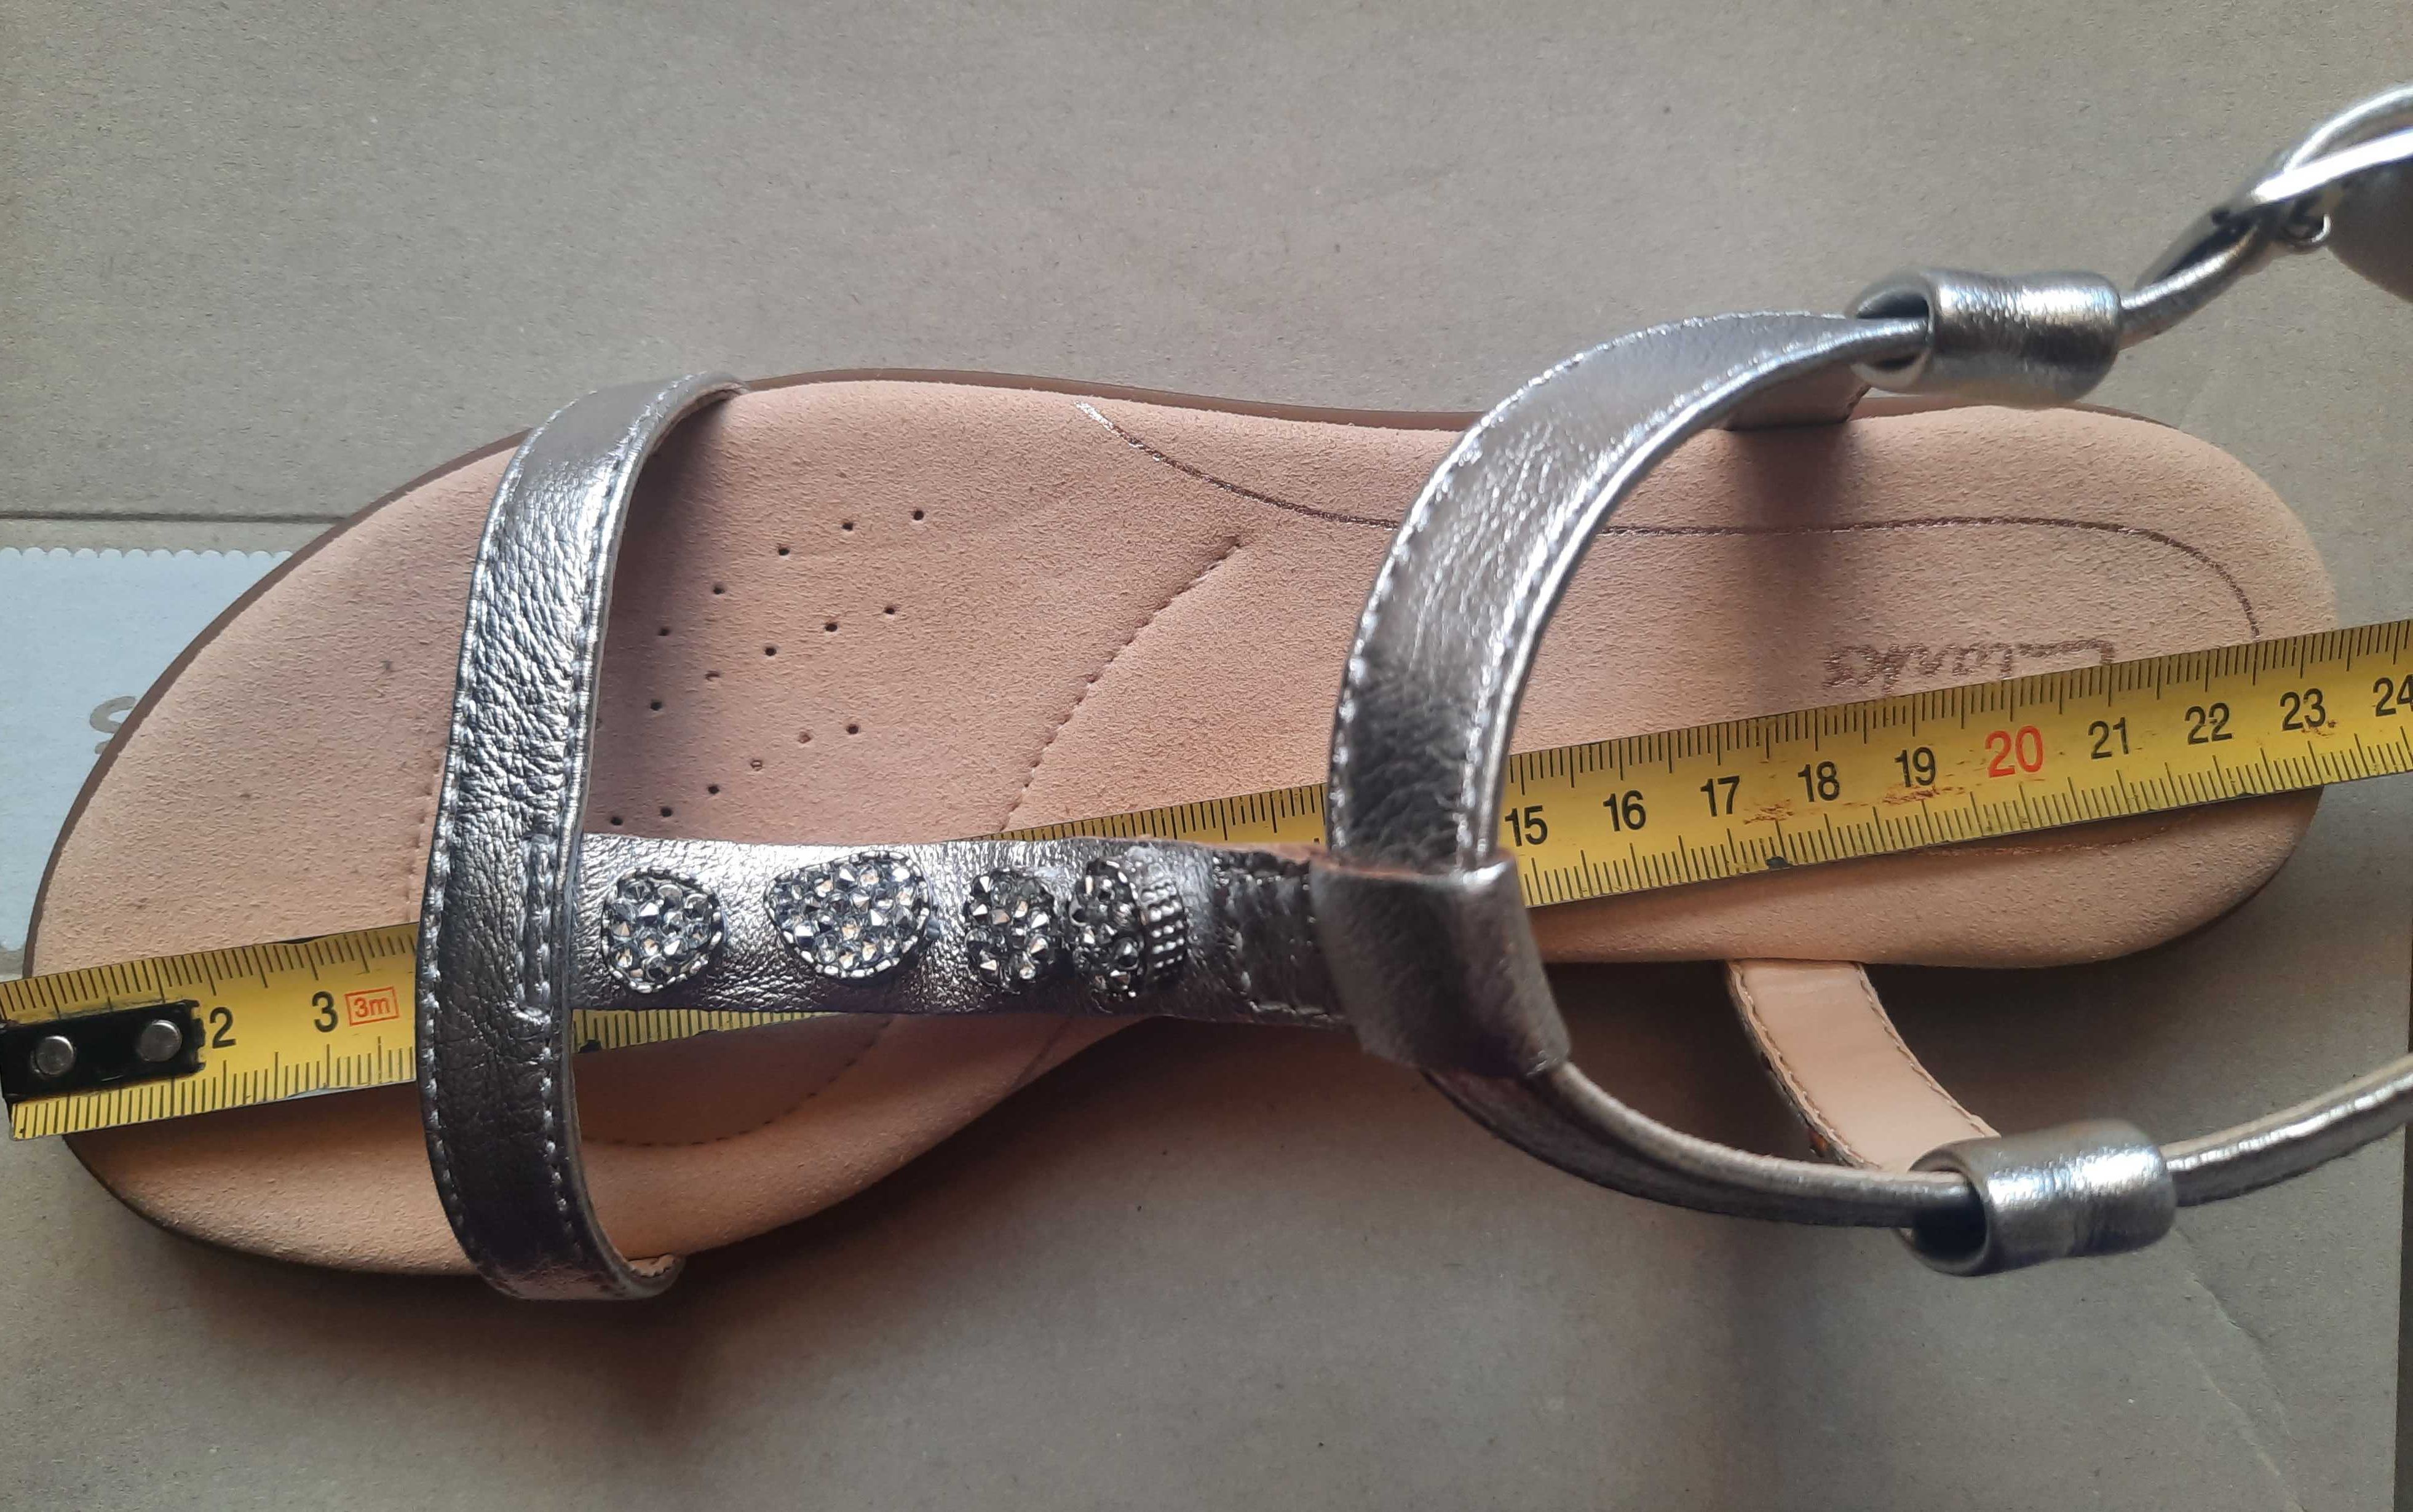 Новые красивые кожаные босоножки Clarks, женские сандалии, 35-37